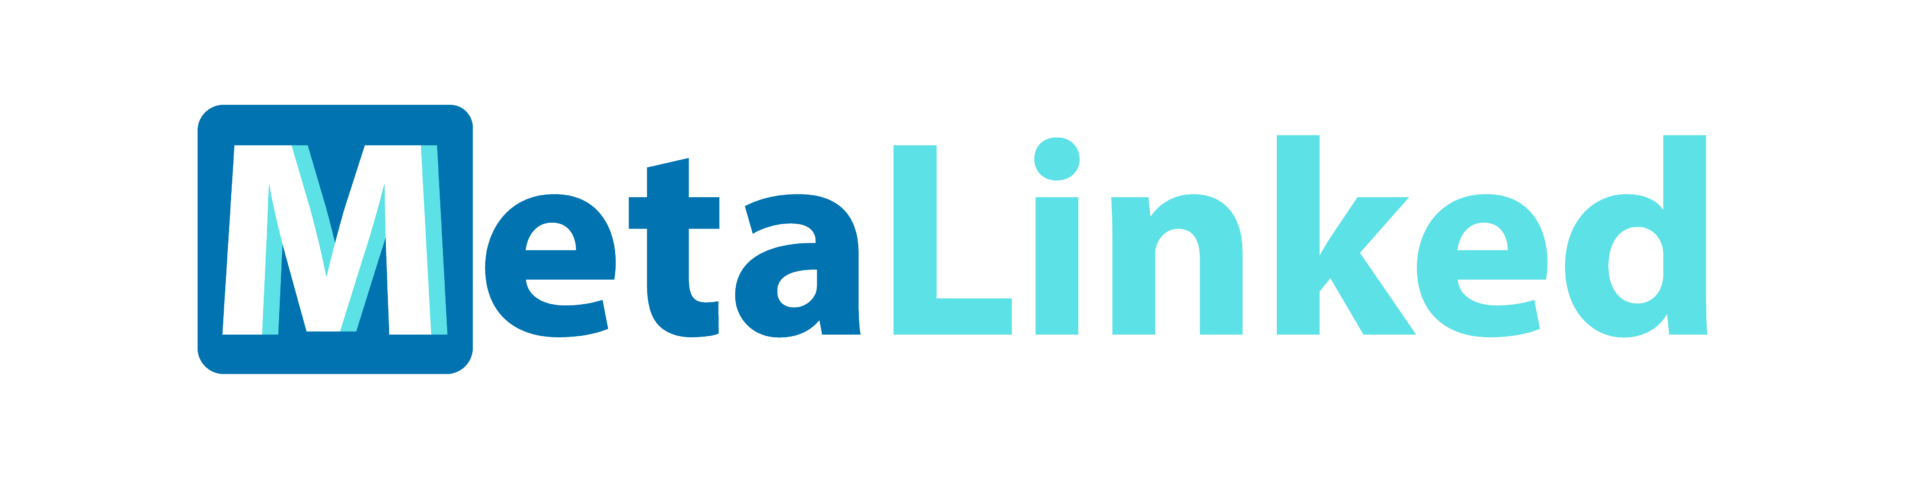 MetaLinked Logo Varieties_LinkedIn Banner copy